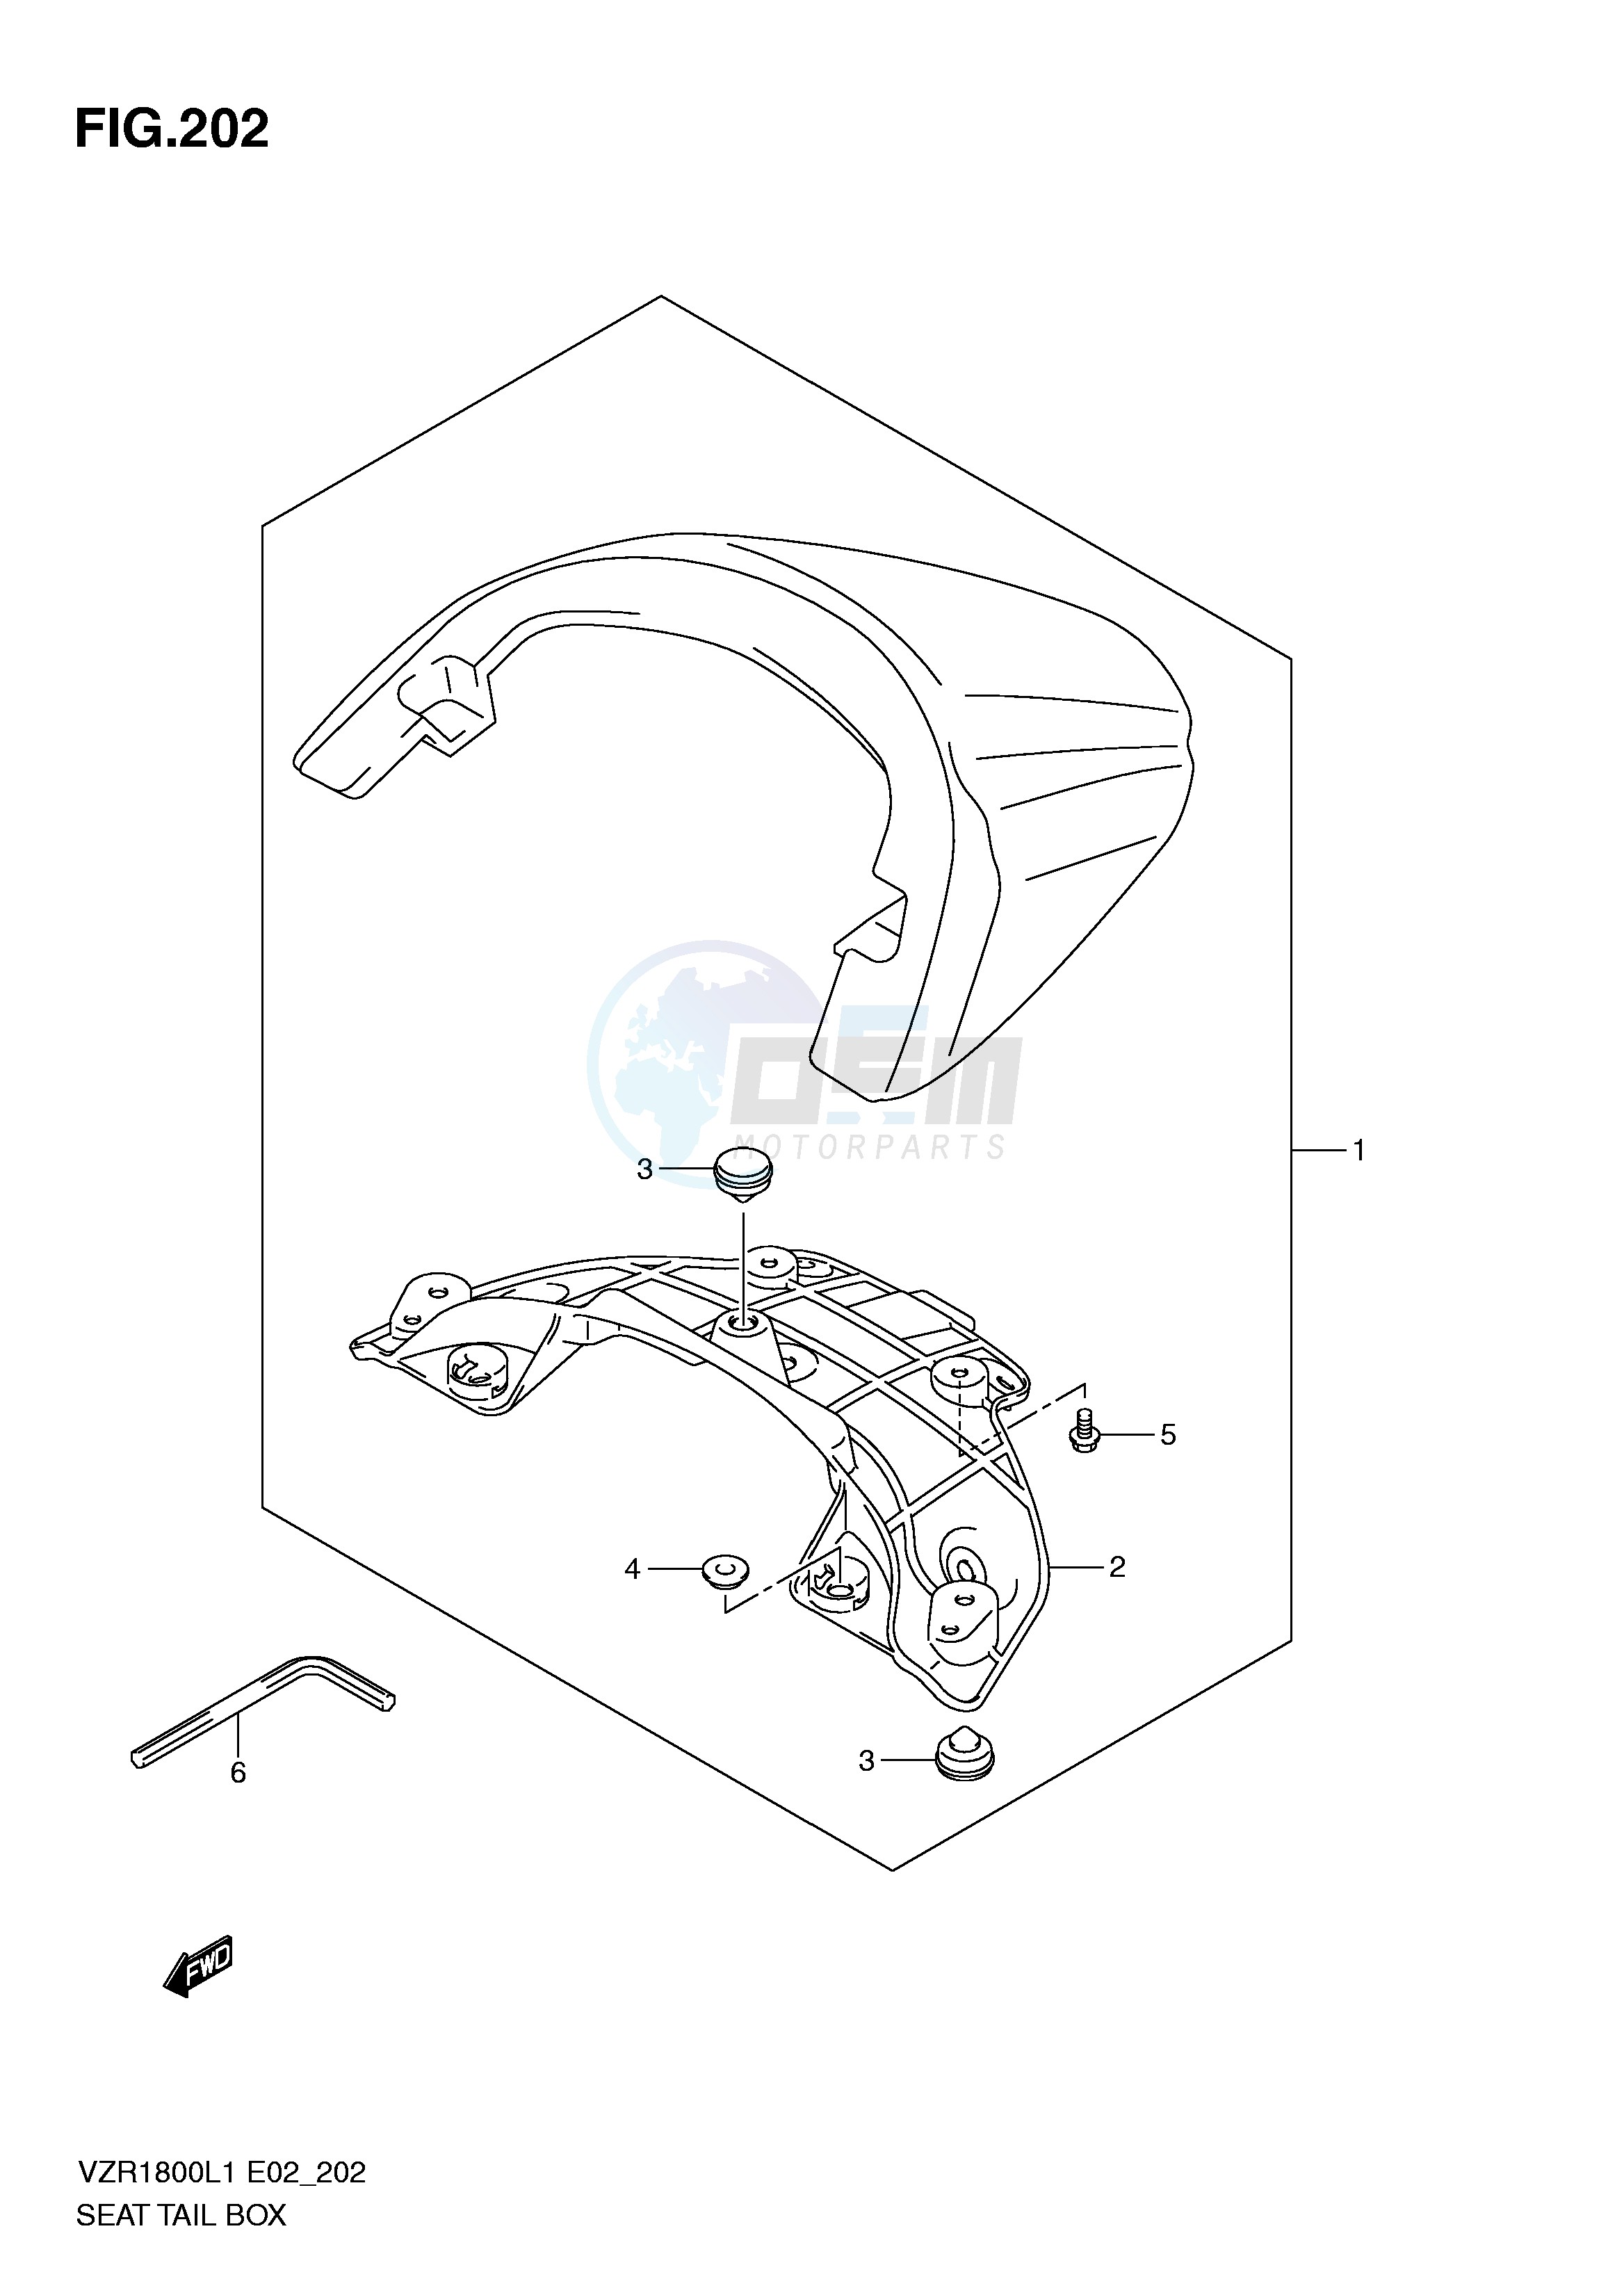 SEAT TAIL BOX (VZR1800L1 E19) blueprint